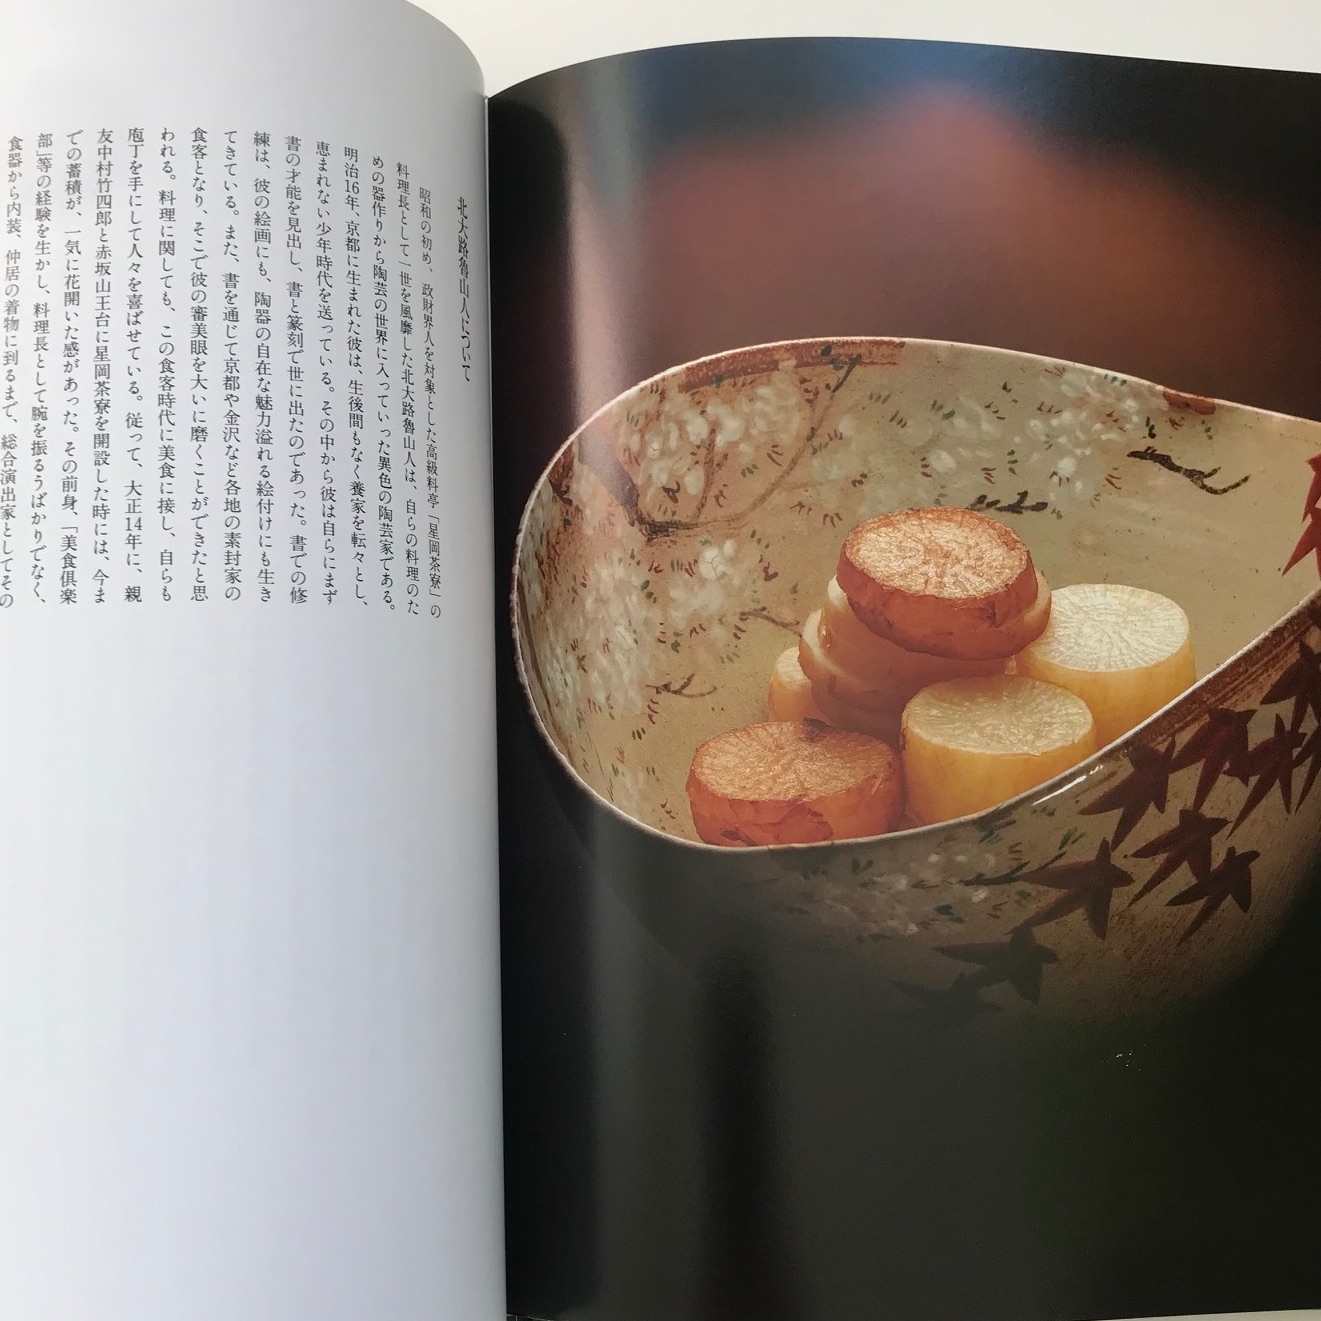 百味菜々（ひゃくみさいさい)」Recipes:横山夫紀子 / Photograph:秋元